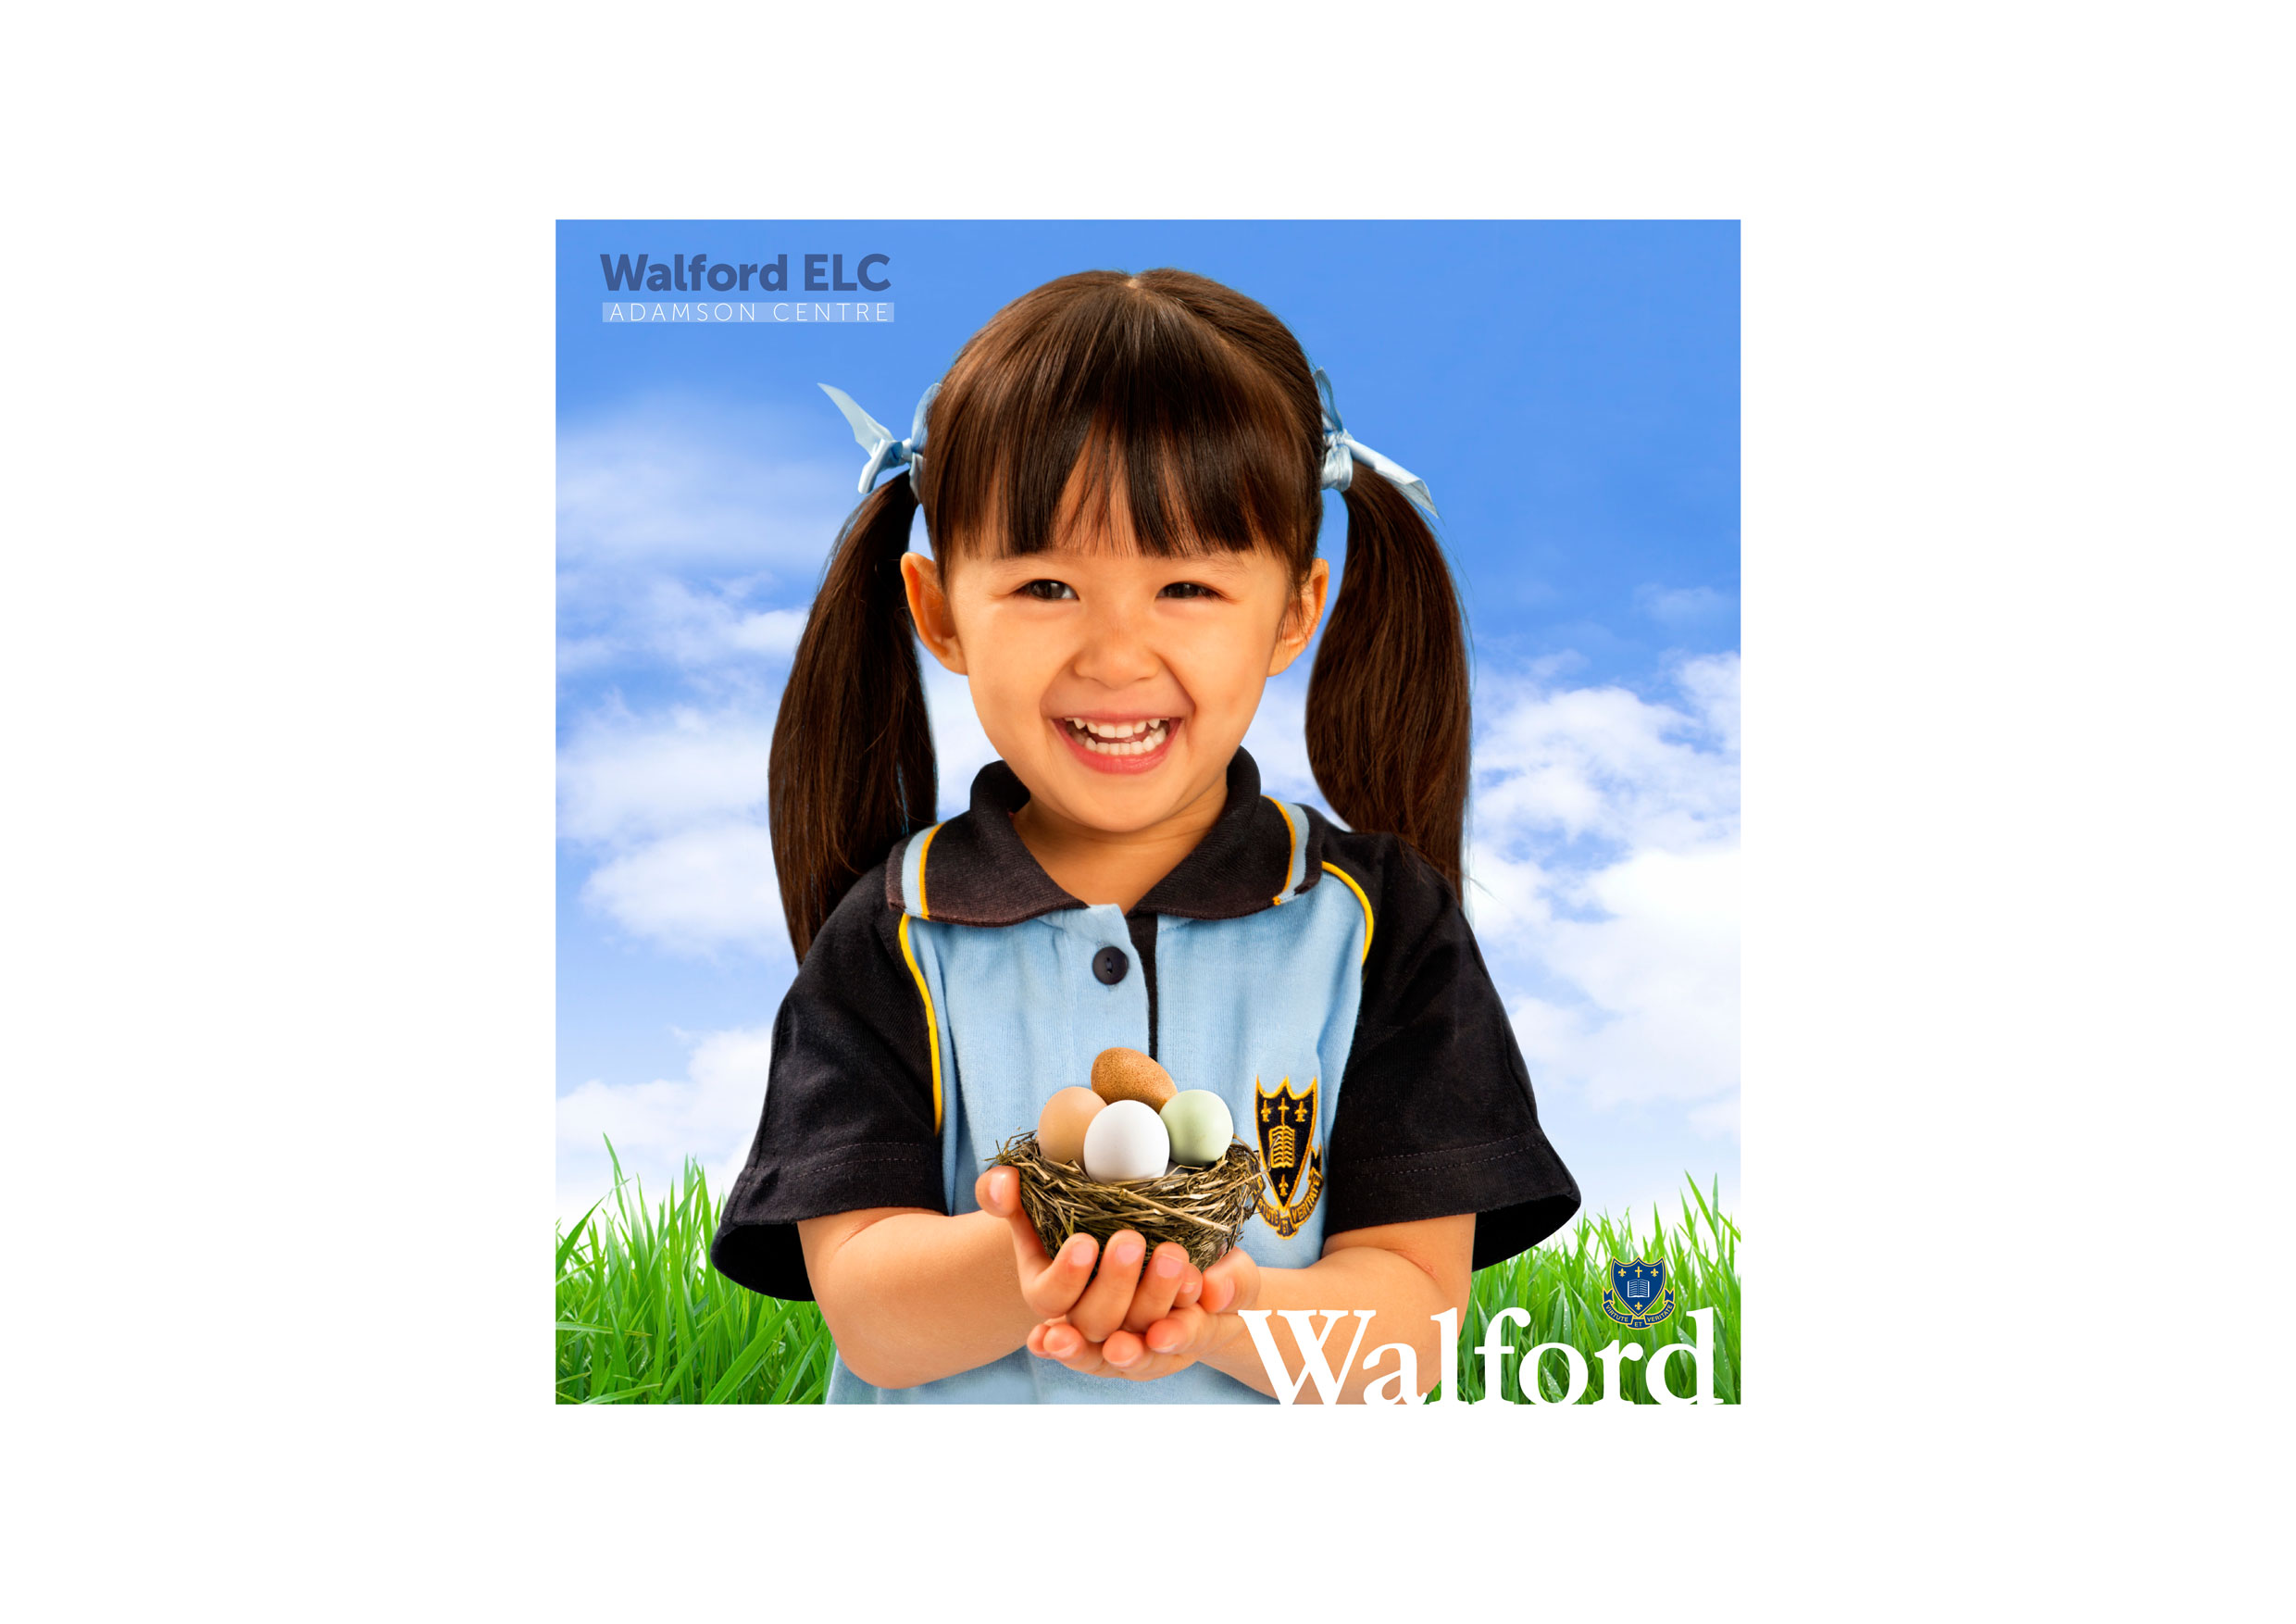 WALFORD-ELC-BRANDING_6